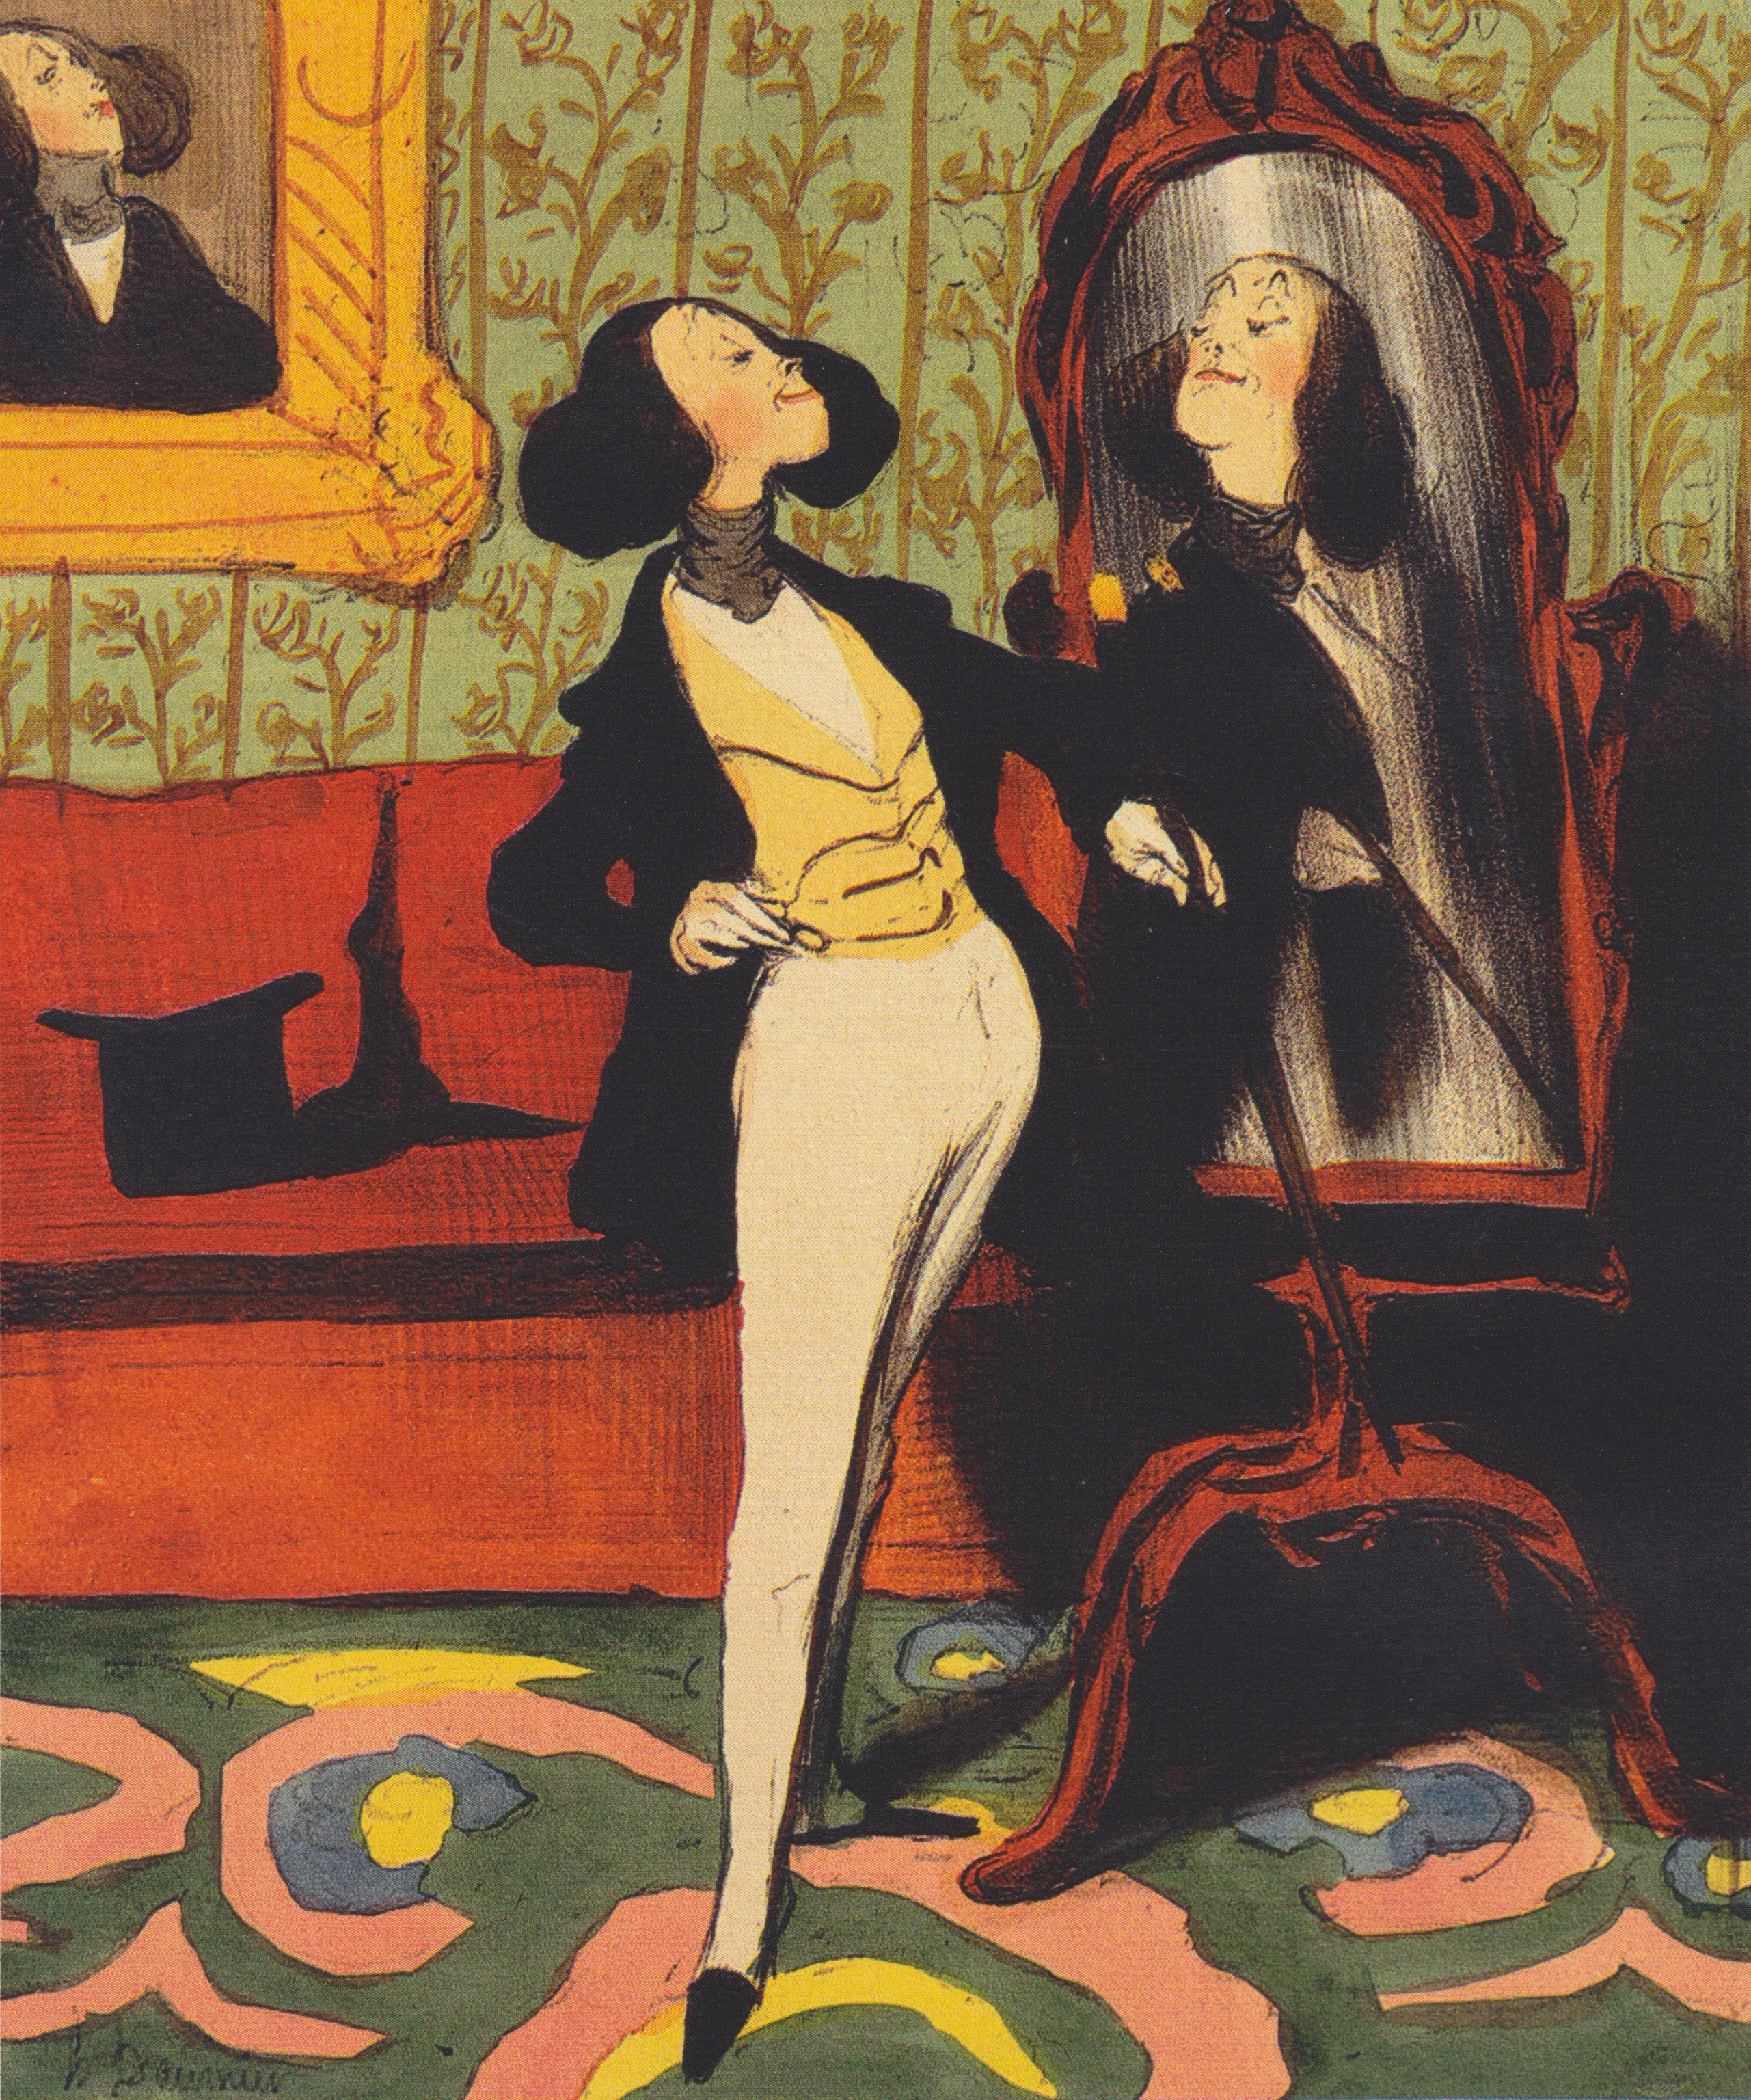 Auf dem Bild ist der Künstler Honoré Daumier zu sehen